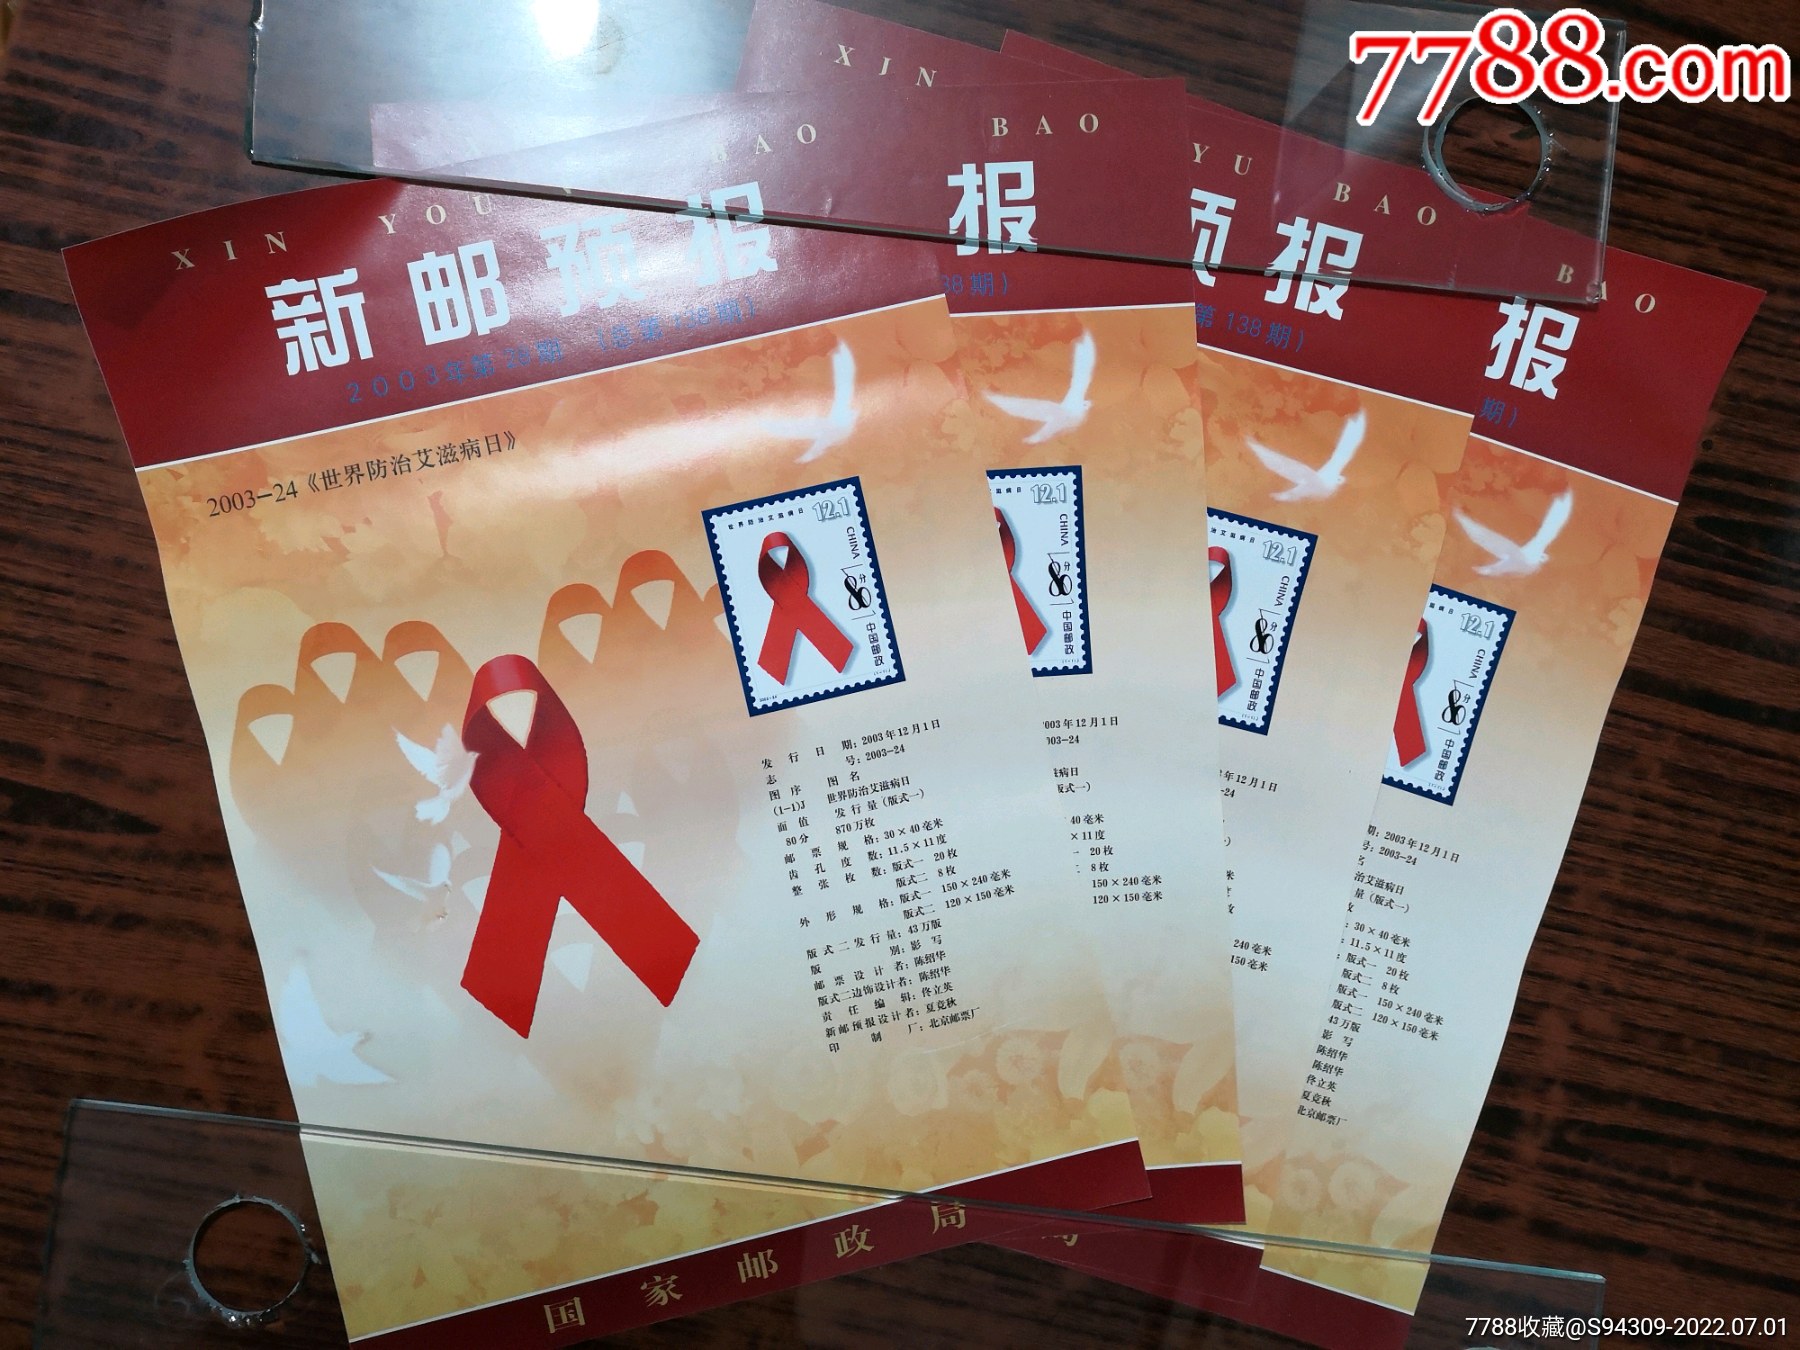 2003—24世界防治艾滋病日新邮预报